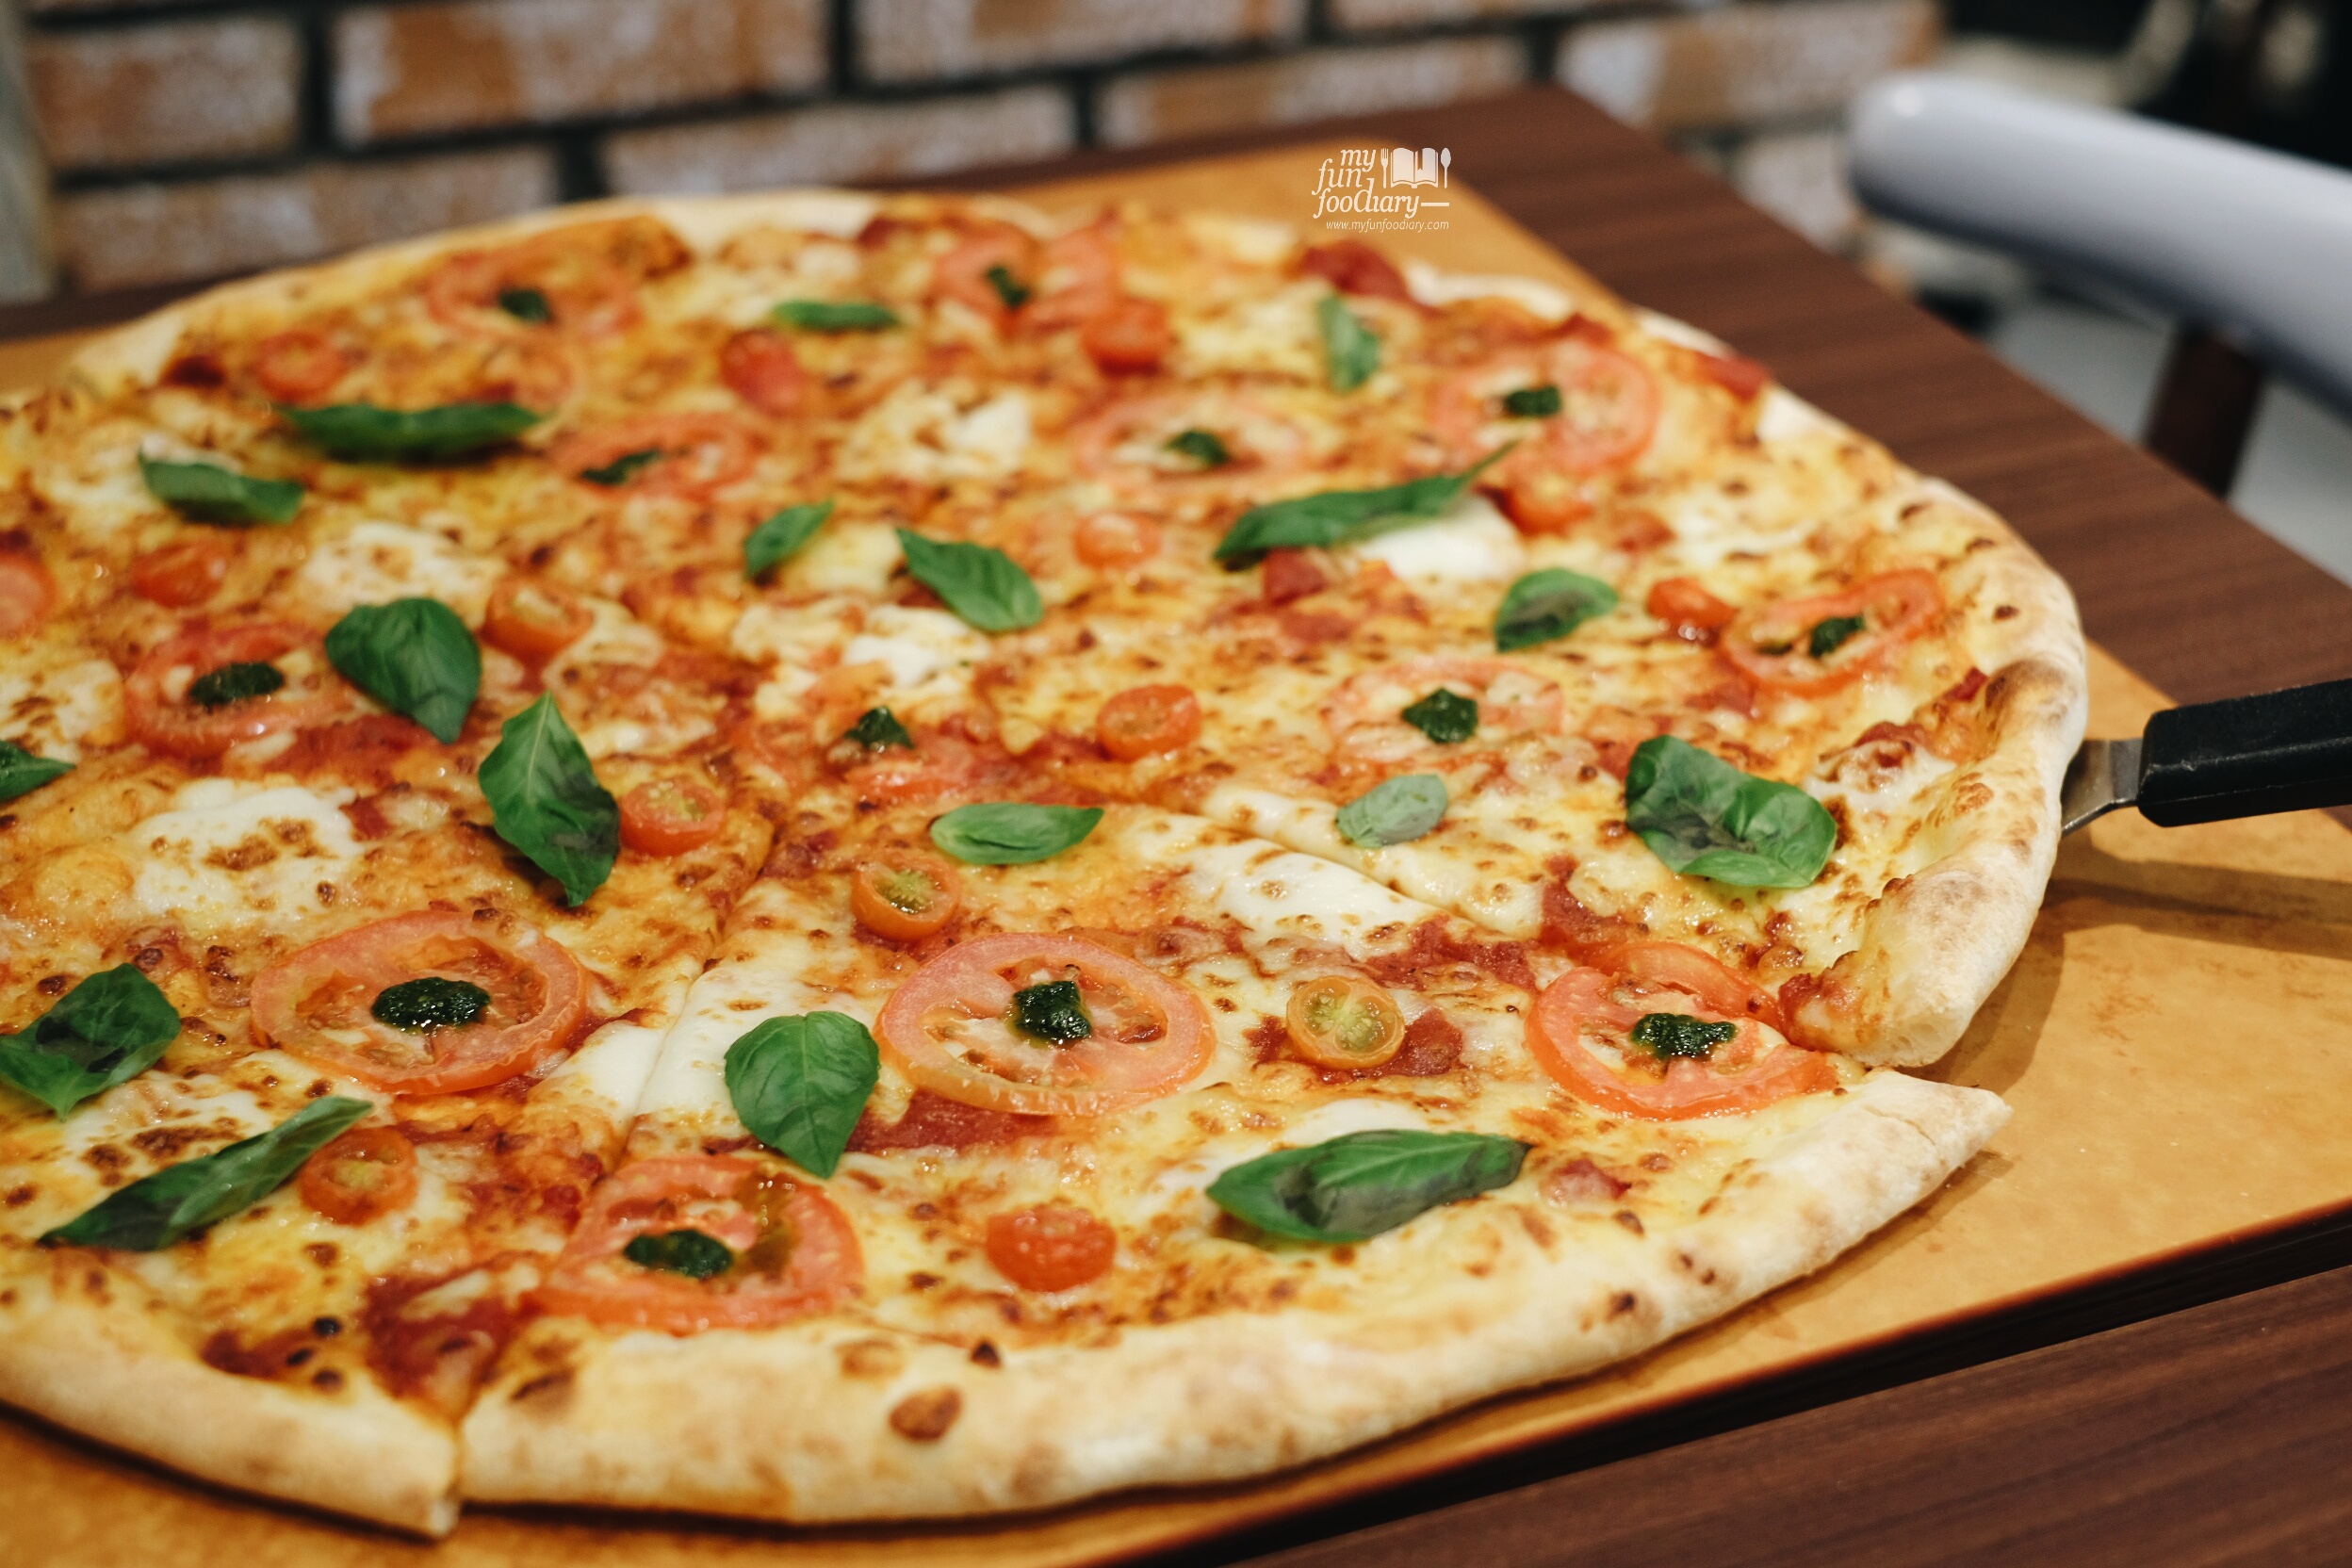 18" Jumbo Size Pizza at The Kitchen Pizza Hut by Myfunfoodiary